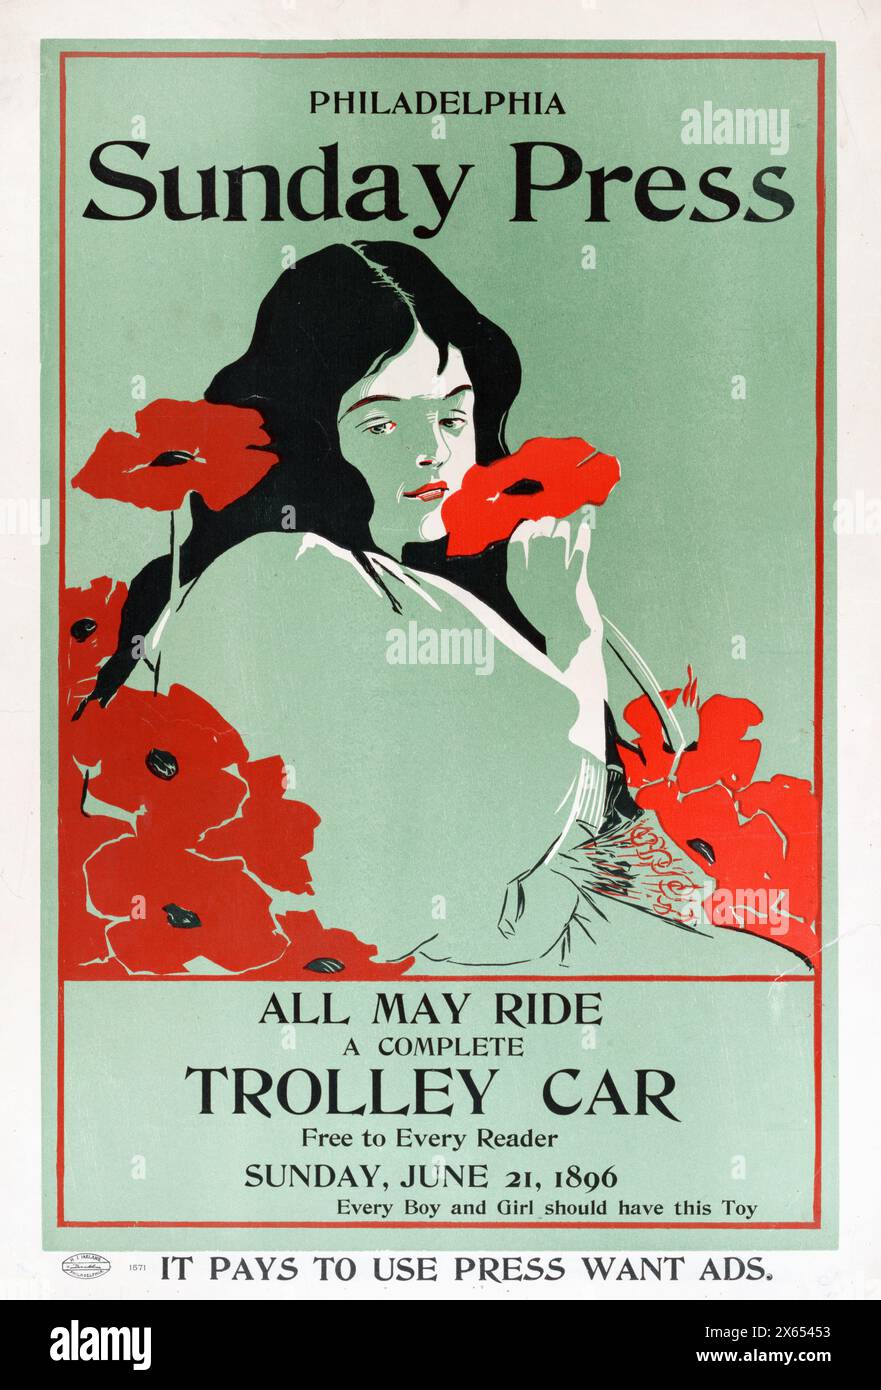 George Reiter Brill (illustratore americano, 1867-1918) Philadelphia Sunday Press, tutti possono viaggiare; un tram completo gratuito per ogni lettore, domenica 21 giugno 1896 - donna con fiori Foto Stock